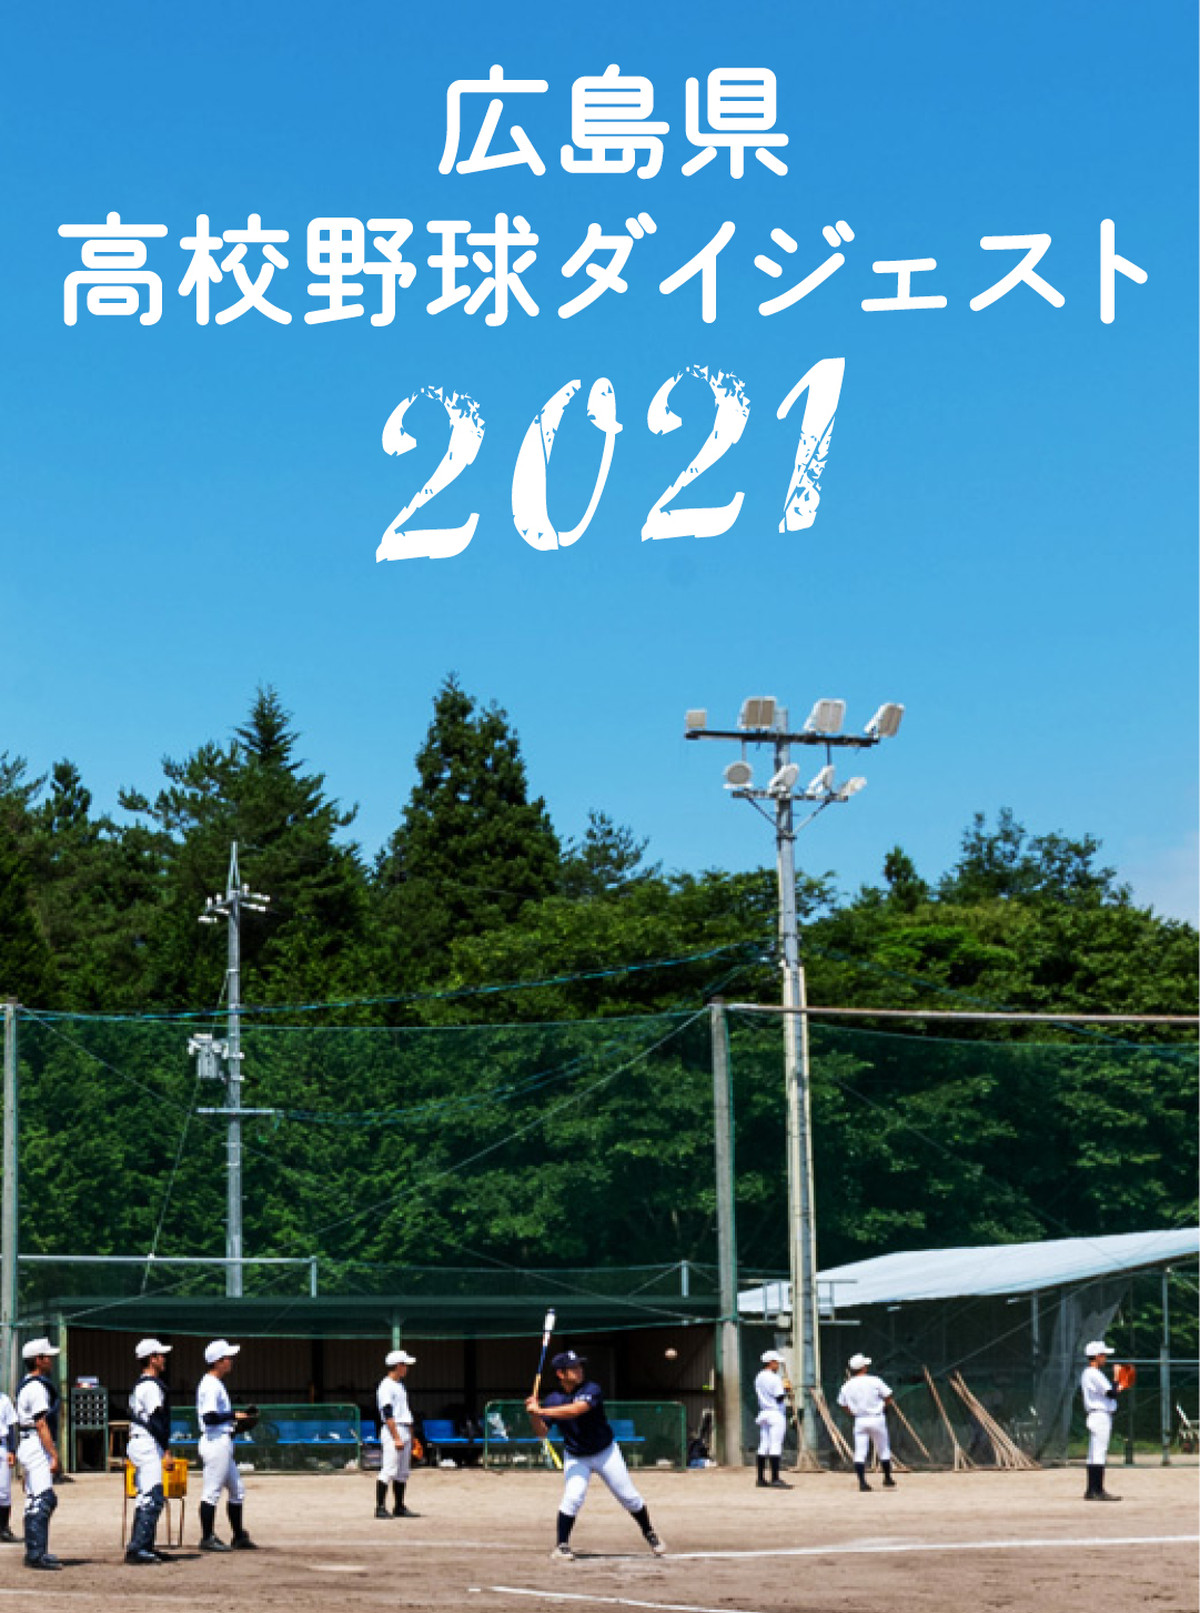 広島県高校野球ダイジェスト21 広島アスリートマガジン オンラインショップ